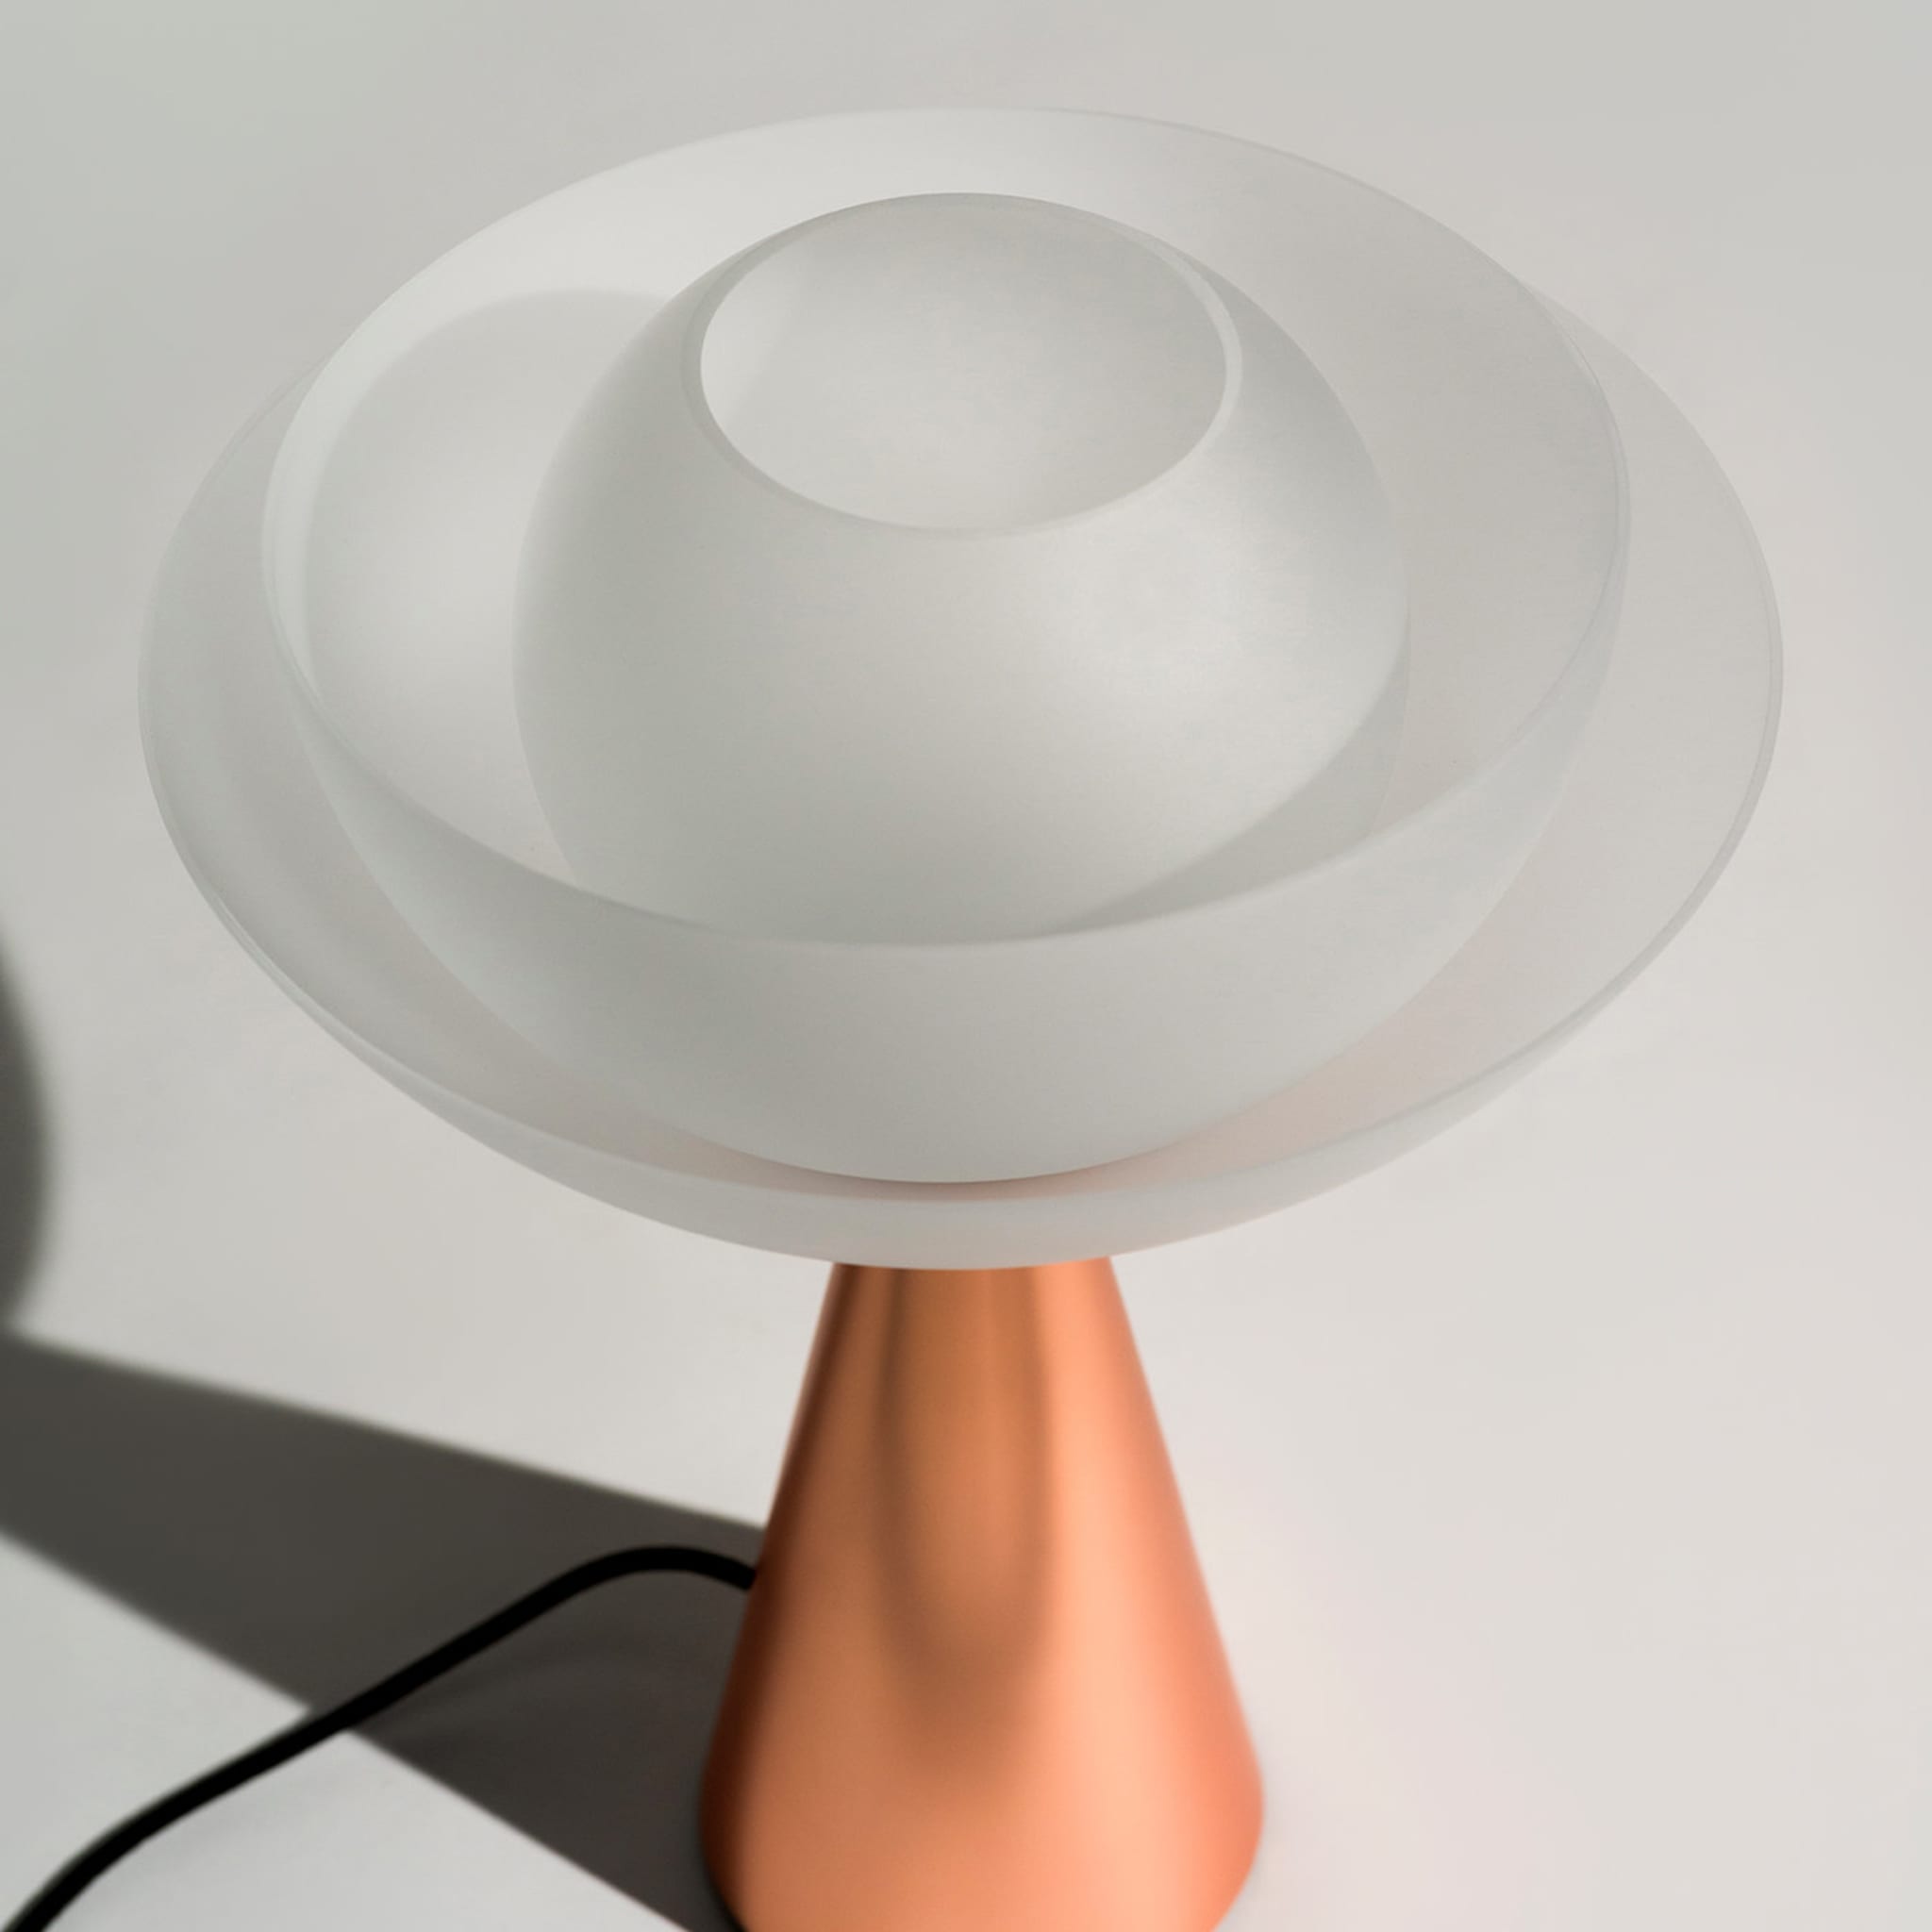 Lotus Metal Table Lamp - Alternative view 1